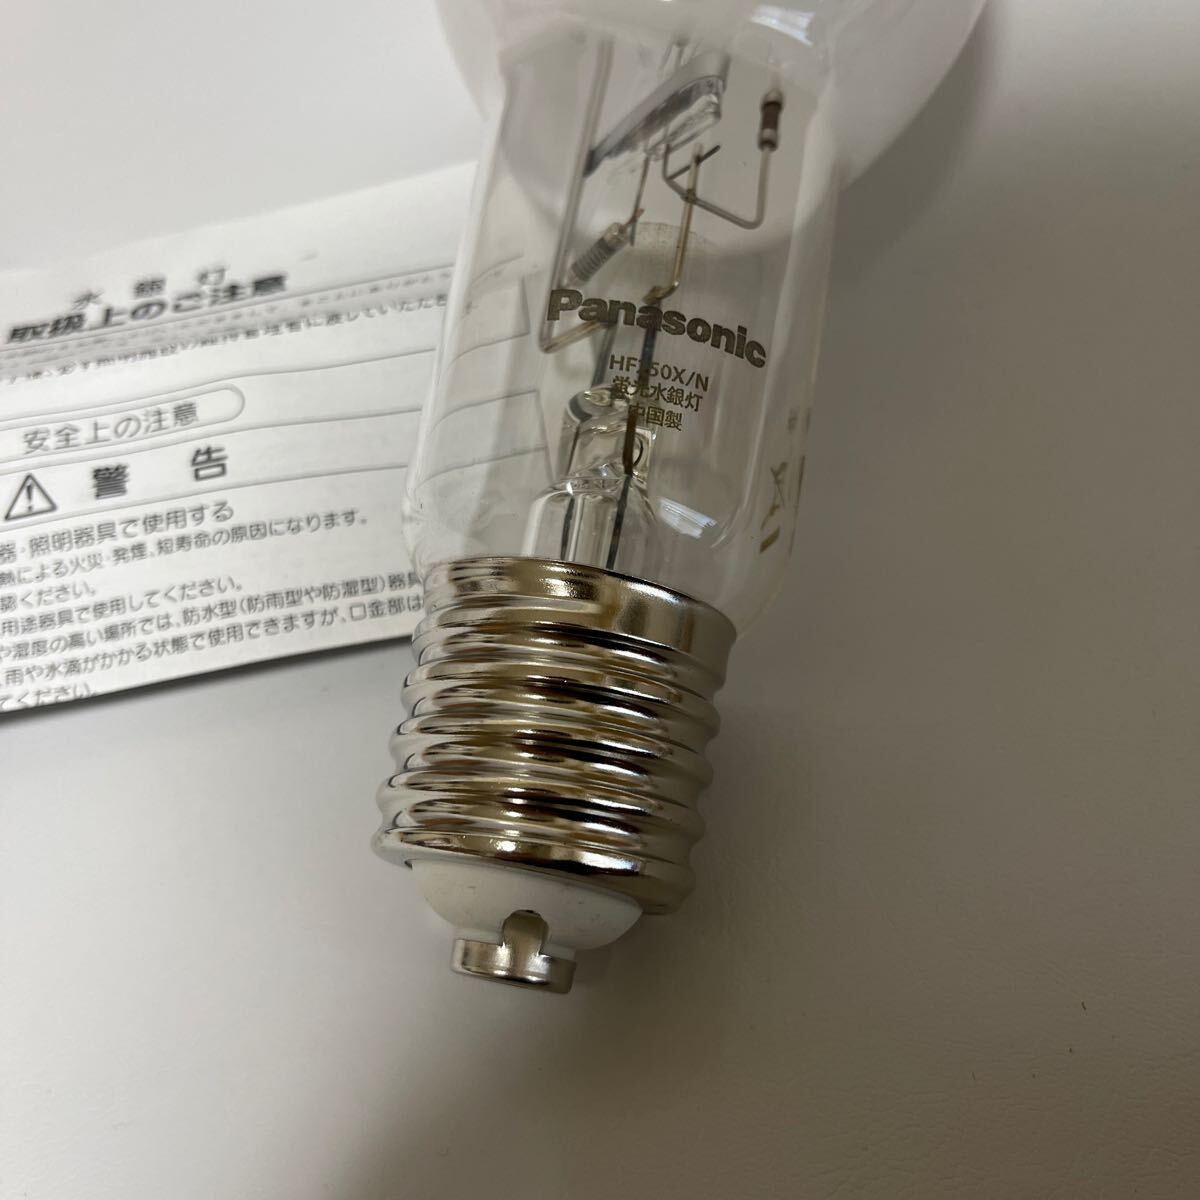  не использовался товар Panasonic Panasonic флуоресценция вода серебряный лампа в общем форма HF250X HID LAMP